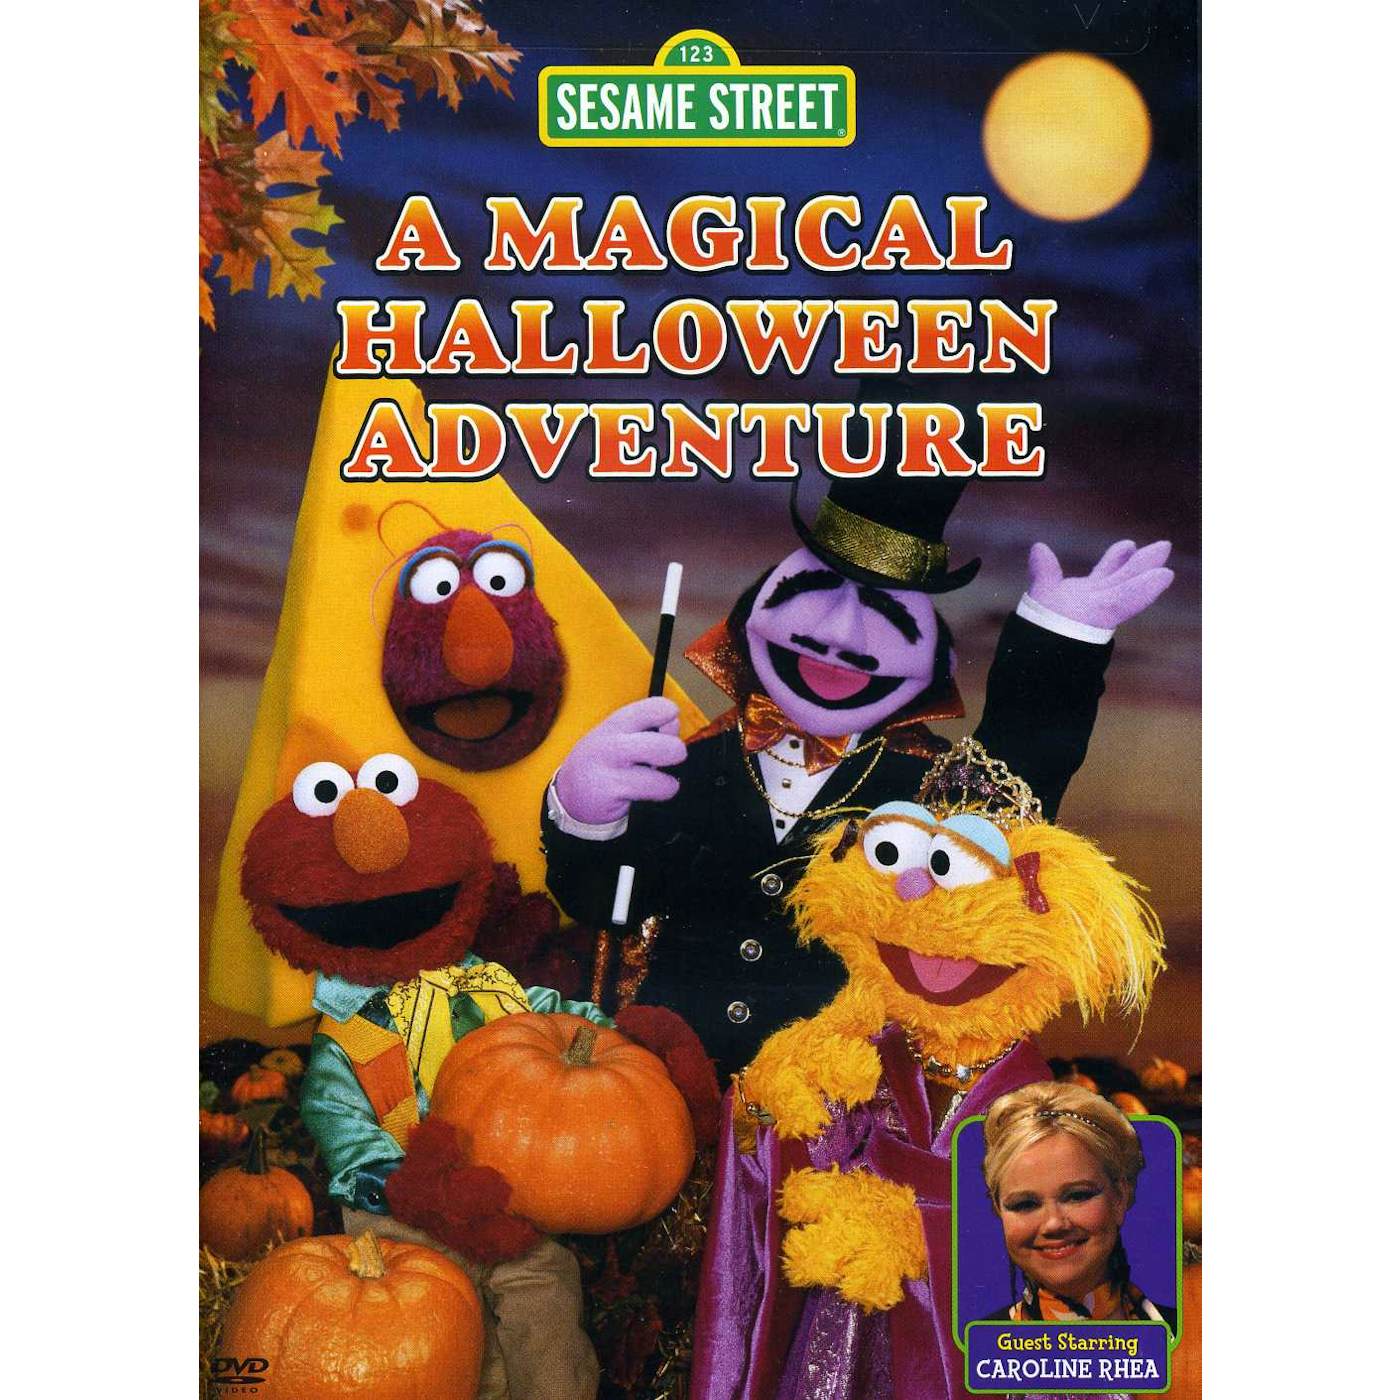 Sesame Street MAGICAL HALLOWEEN ADVENTURE DVD